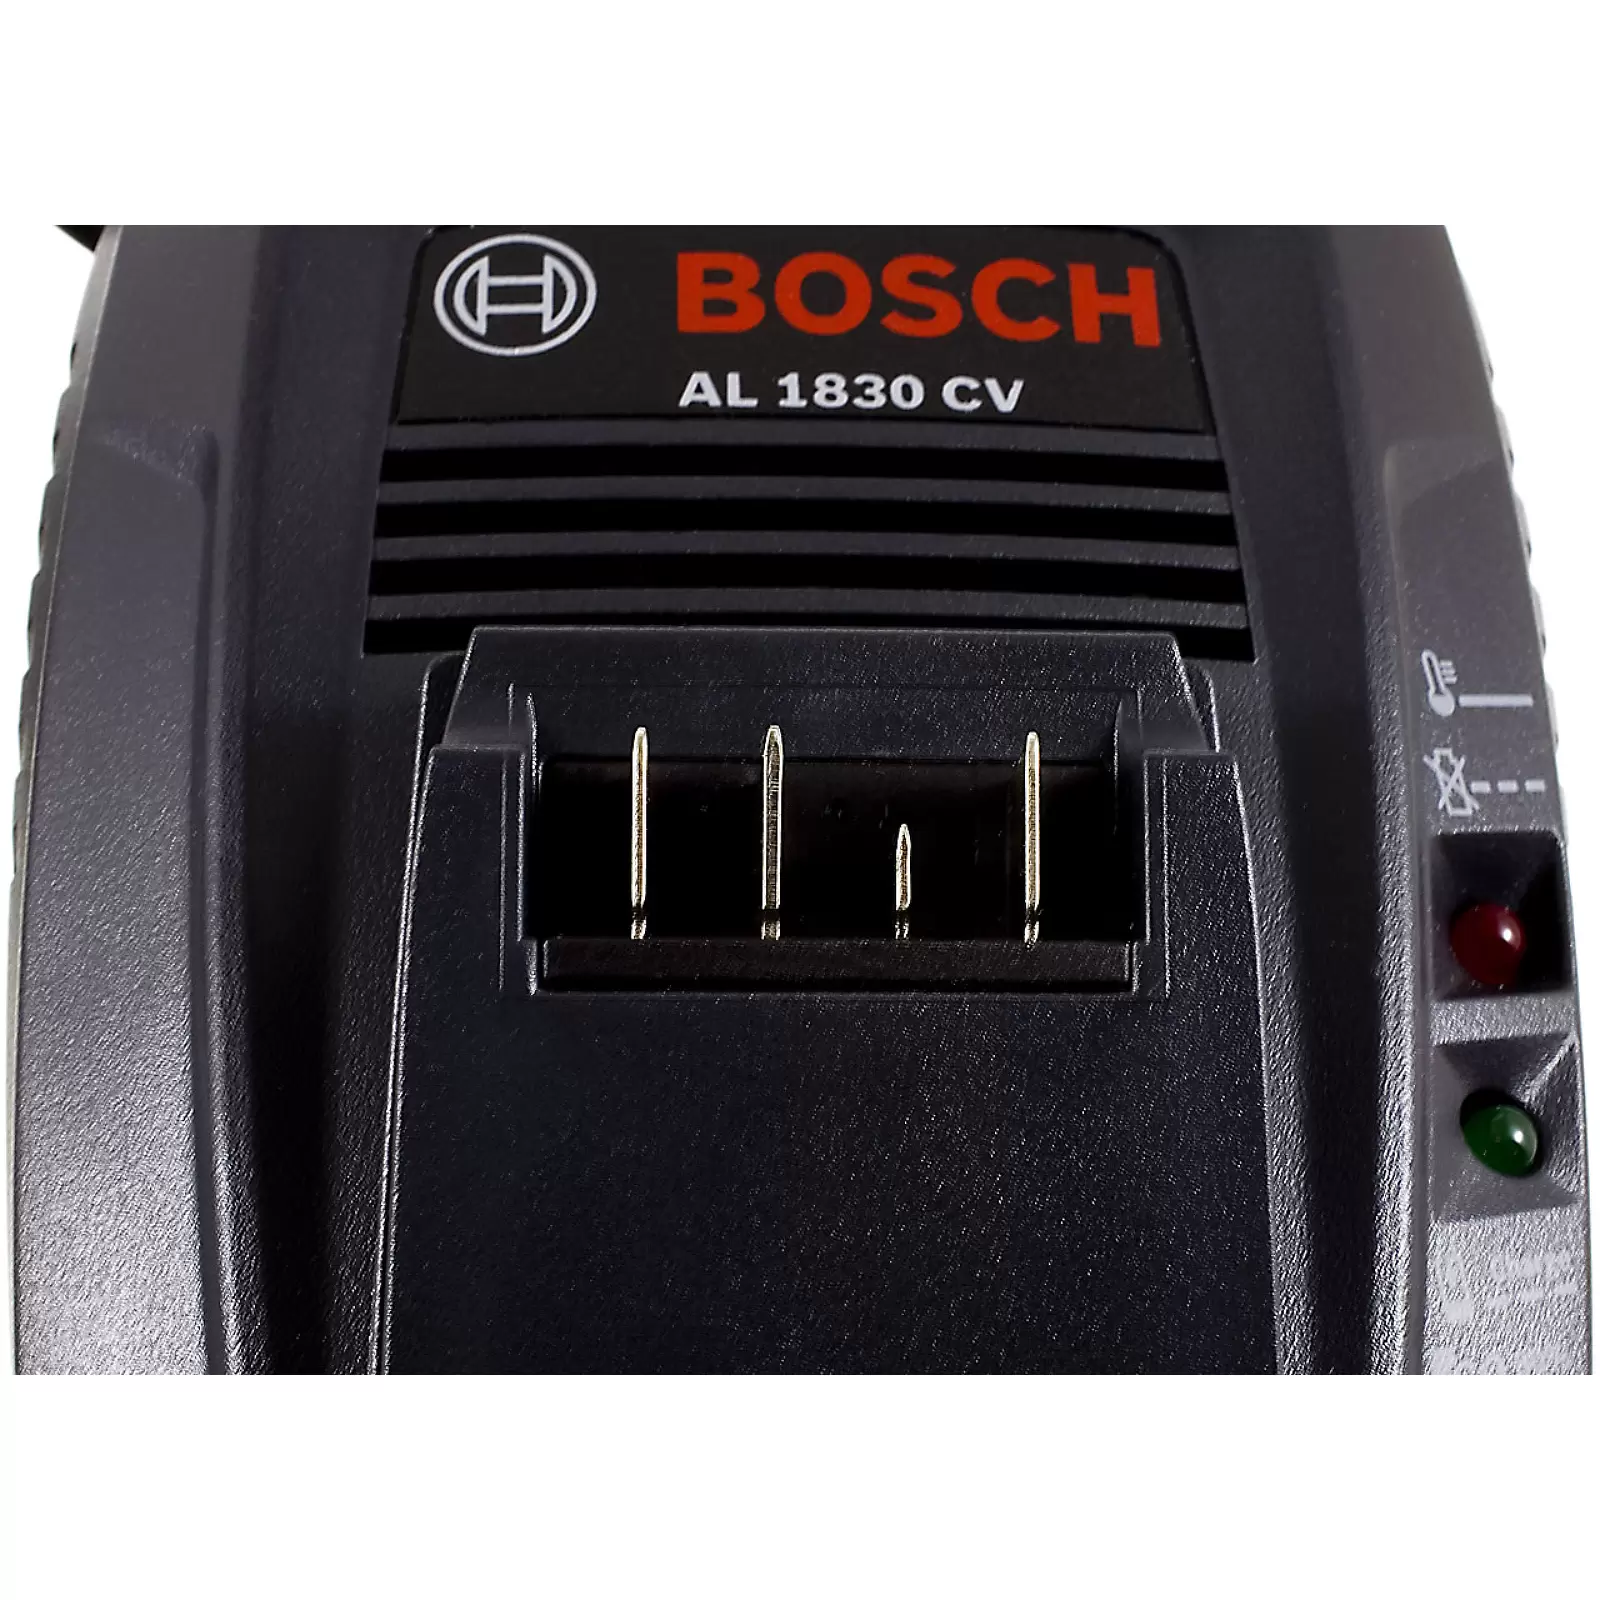 Bosch Schnellladegerät AL 1830 CV / Typ 1600A005B3 , 14,4V-18V, Li-Ion